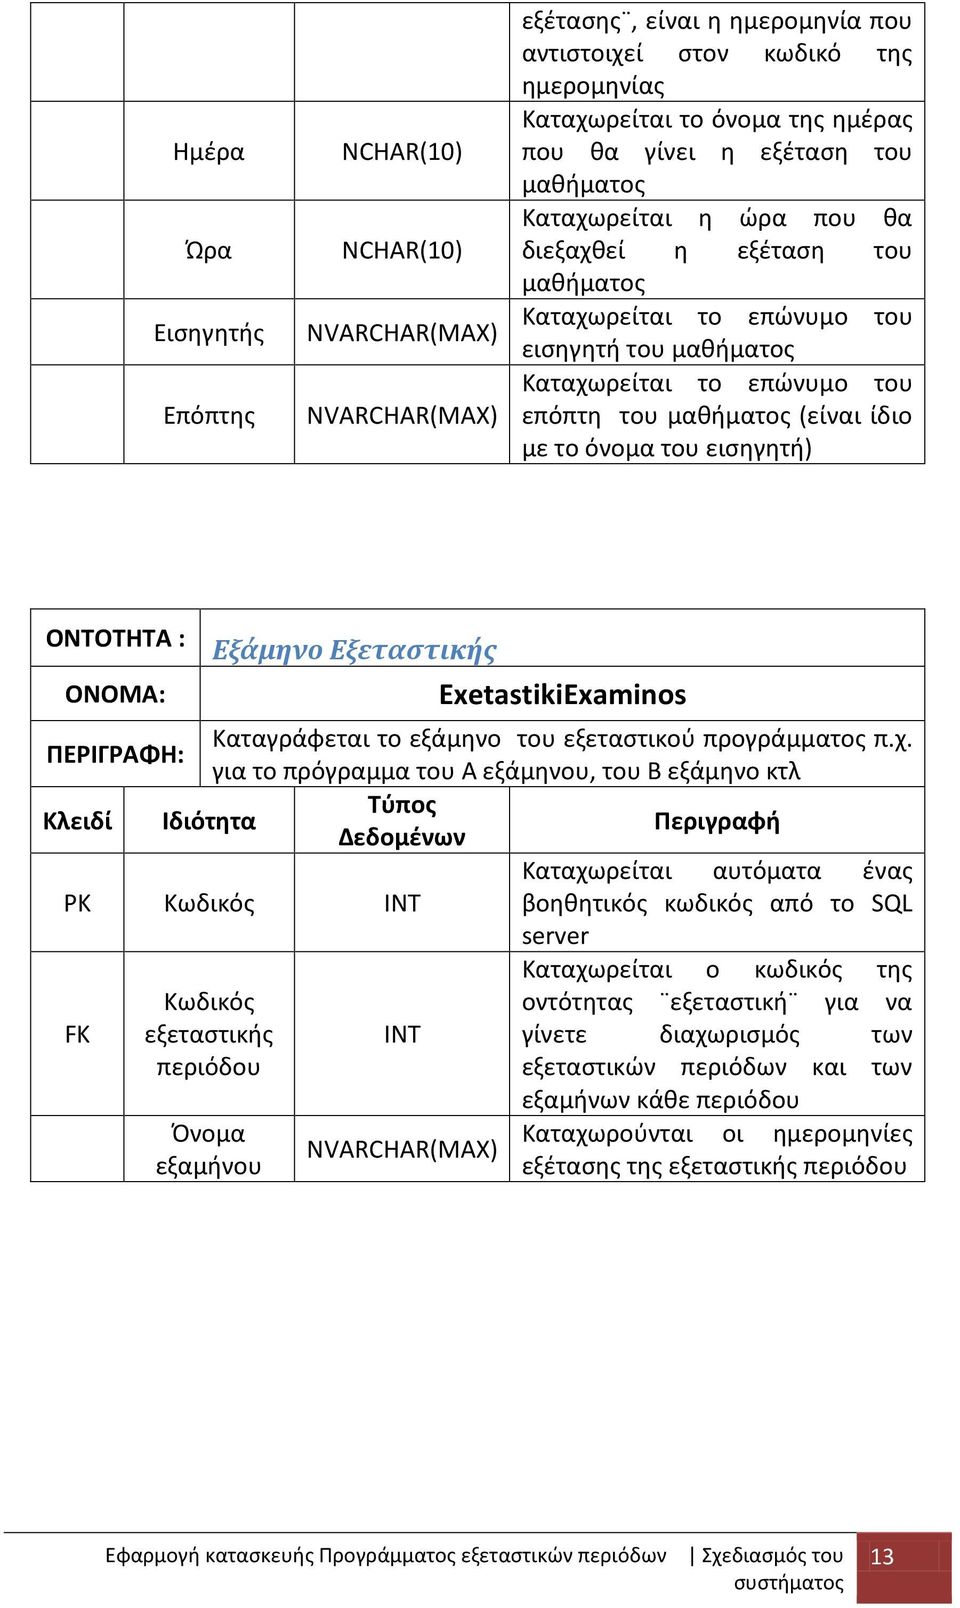 όνομα του εισηγητή) ΟΝΤΟΤΗΤΑ : Εξάμηνο Εξεταστικής ΟΝΟΜΑ: ExetastikiExaminos ΠΕΡΙΓΡΑΦΗ: Καταγράφεται το εξάμηνο του εξεταστικού προγράμματος π.χ.